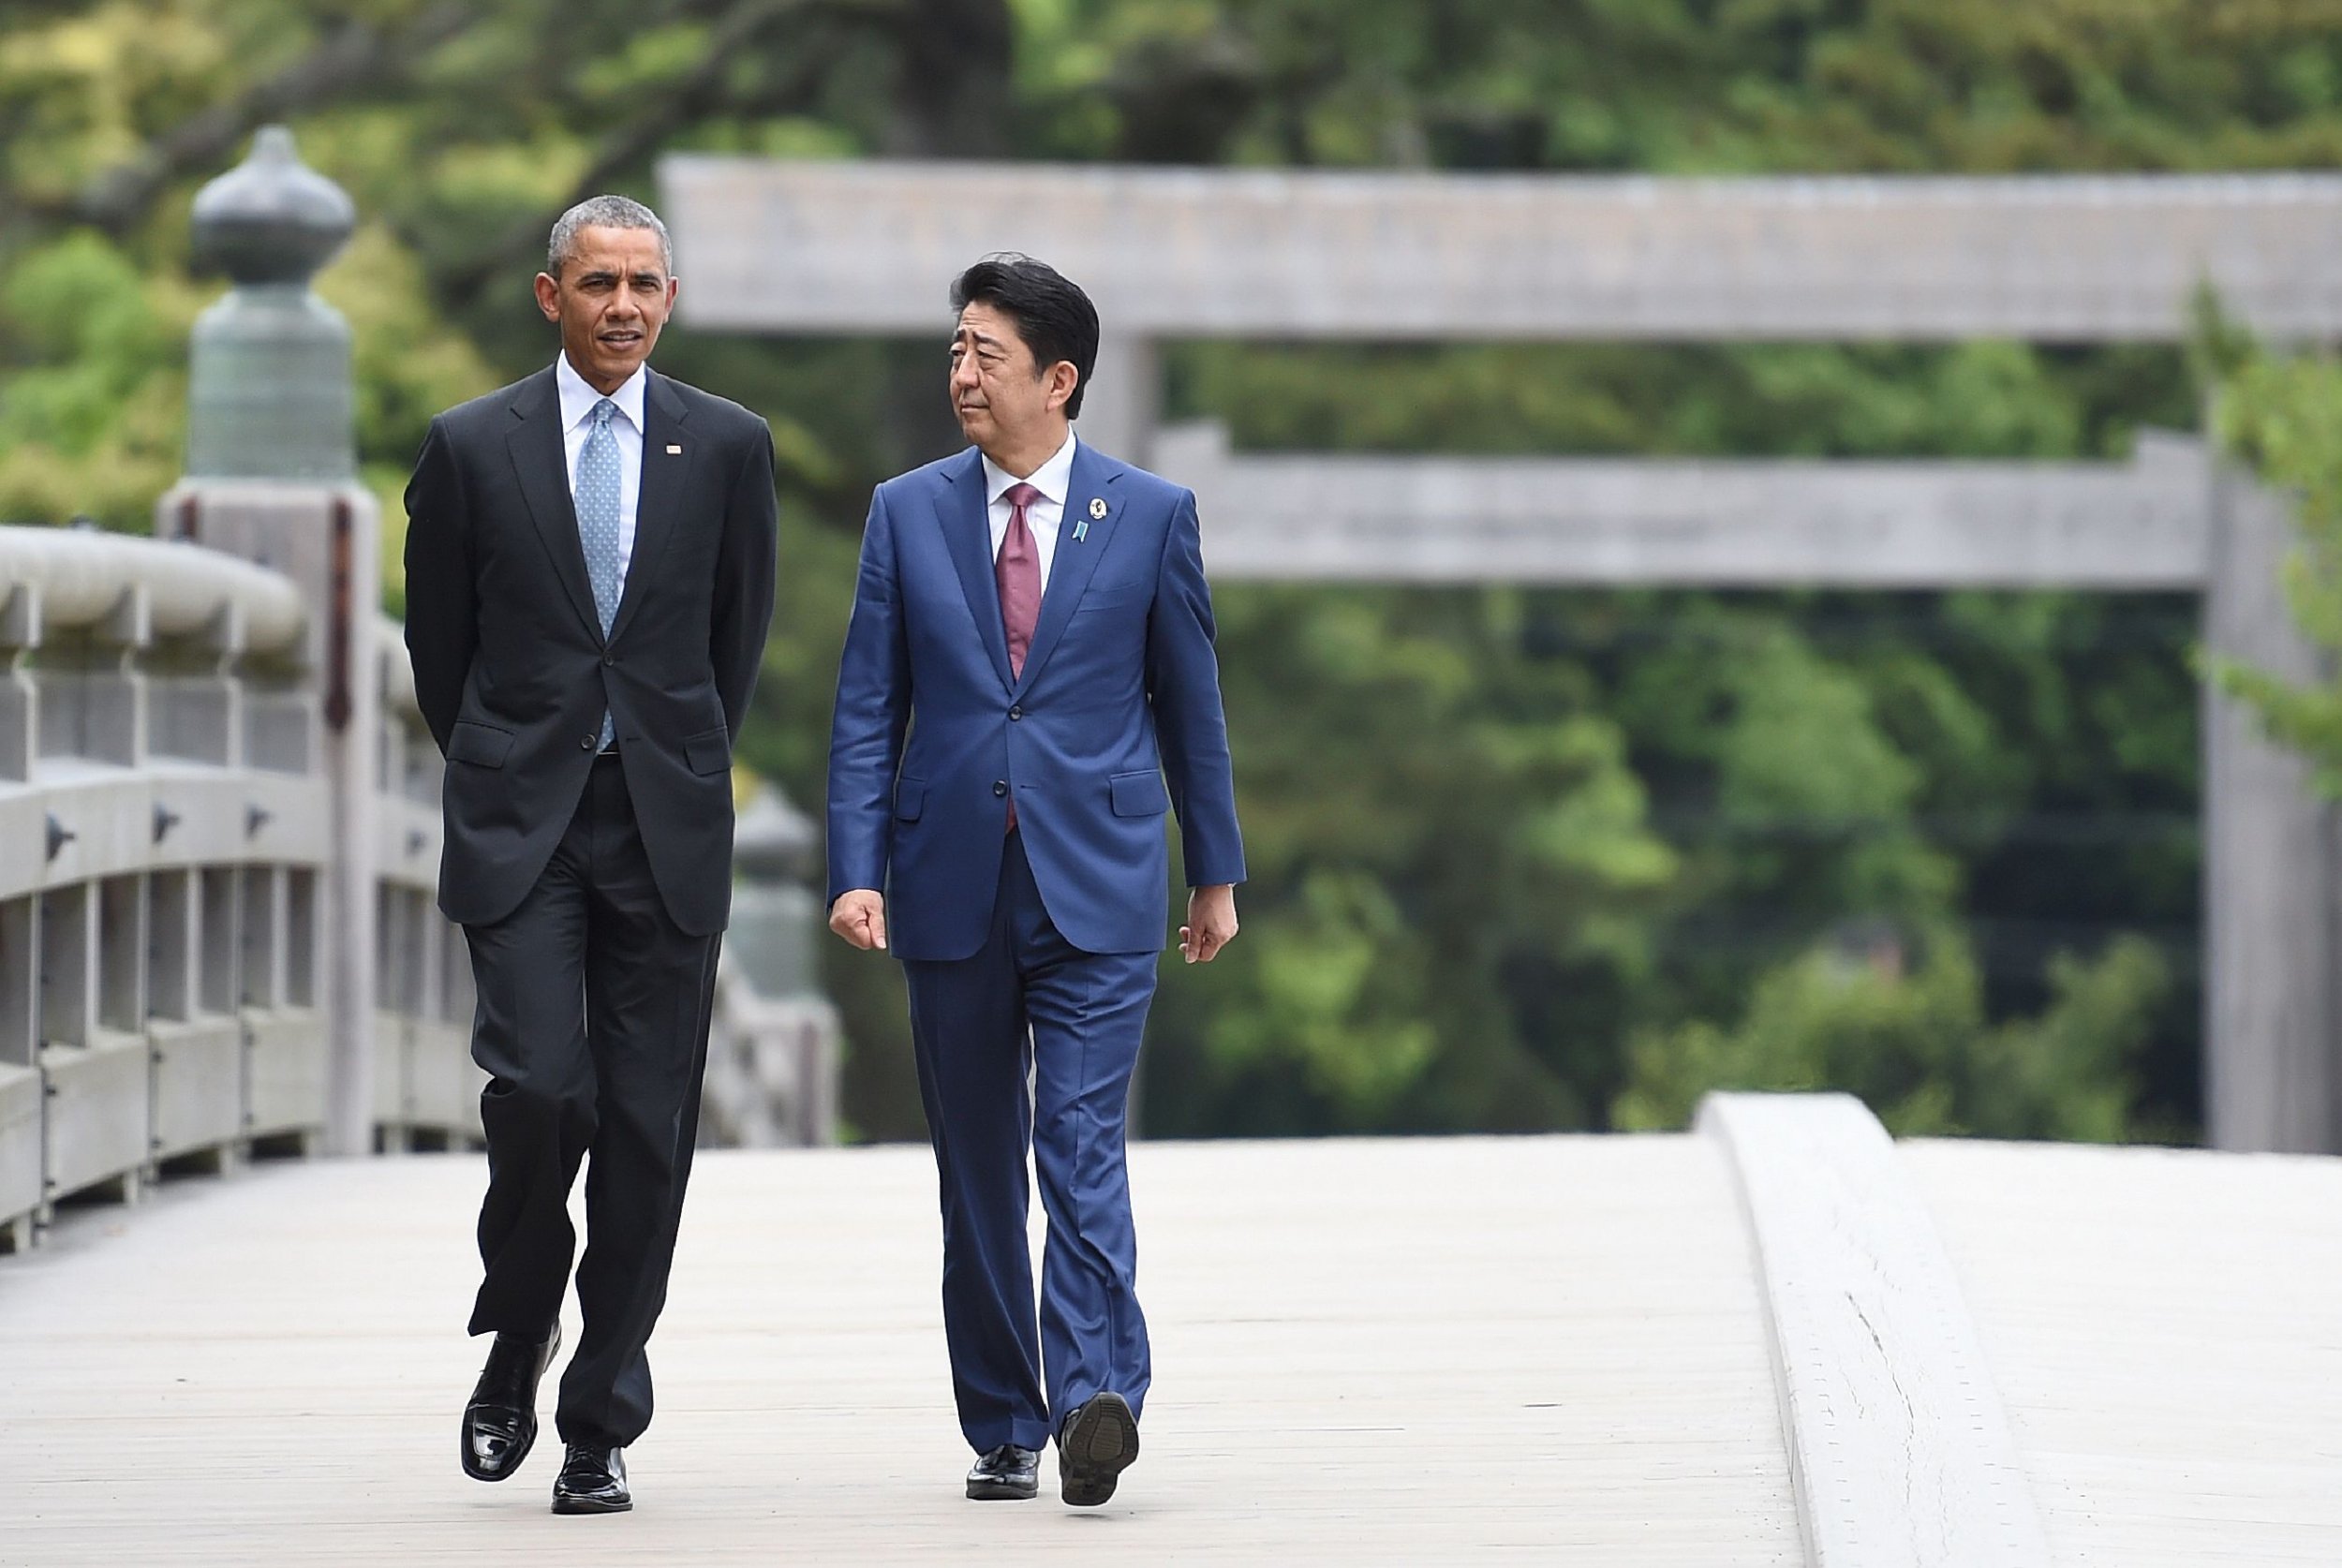 Barack Obama and Shinzo Abe